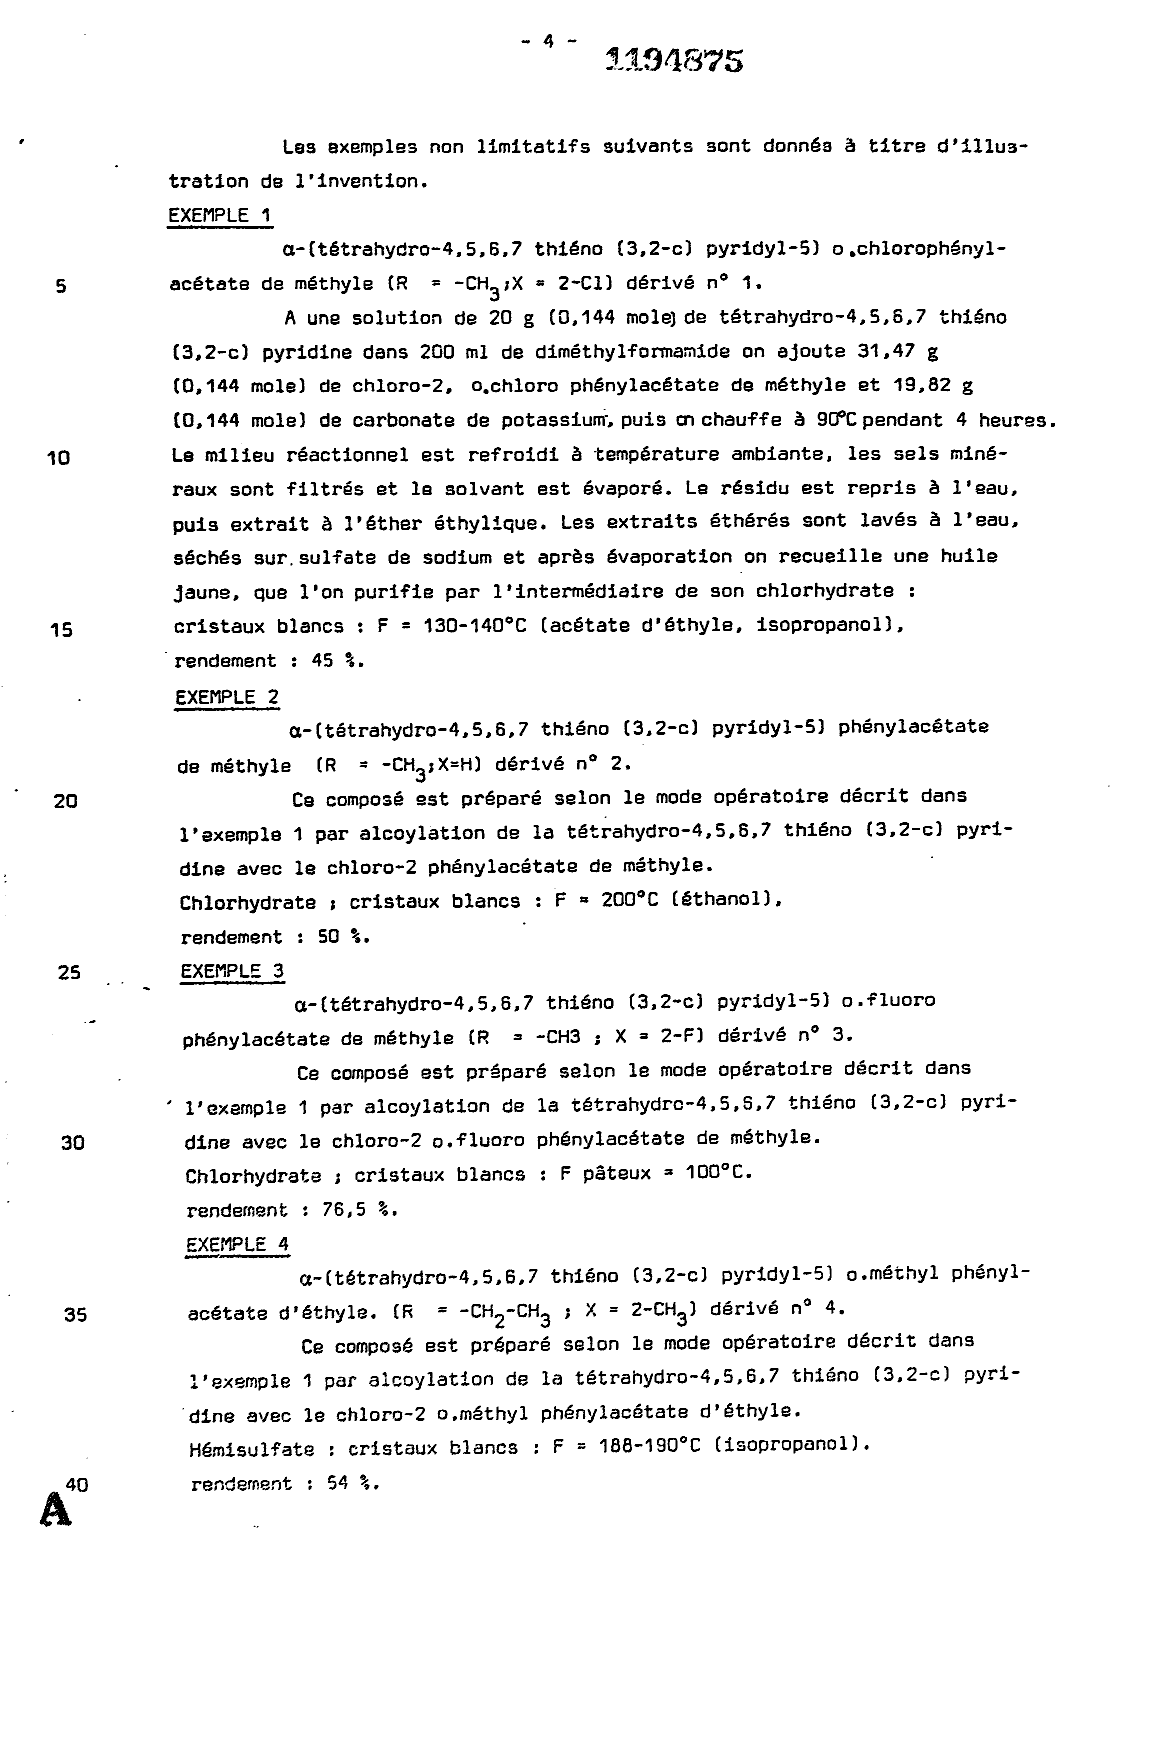 Canadian Patent Document 1194875. Description 19921218. Image 4 of 15